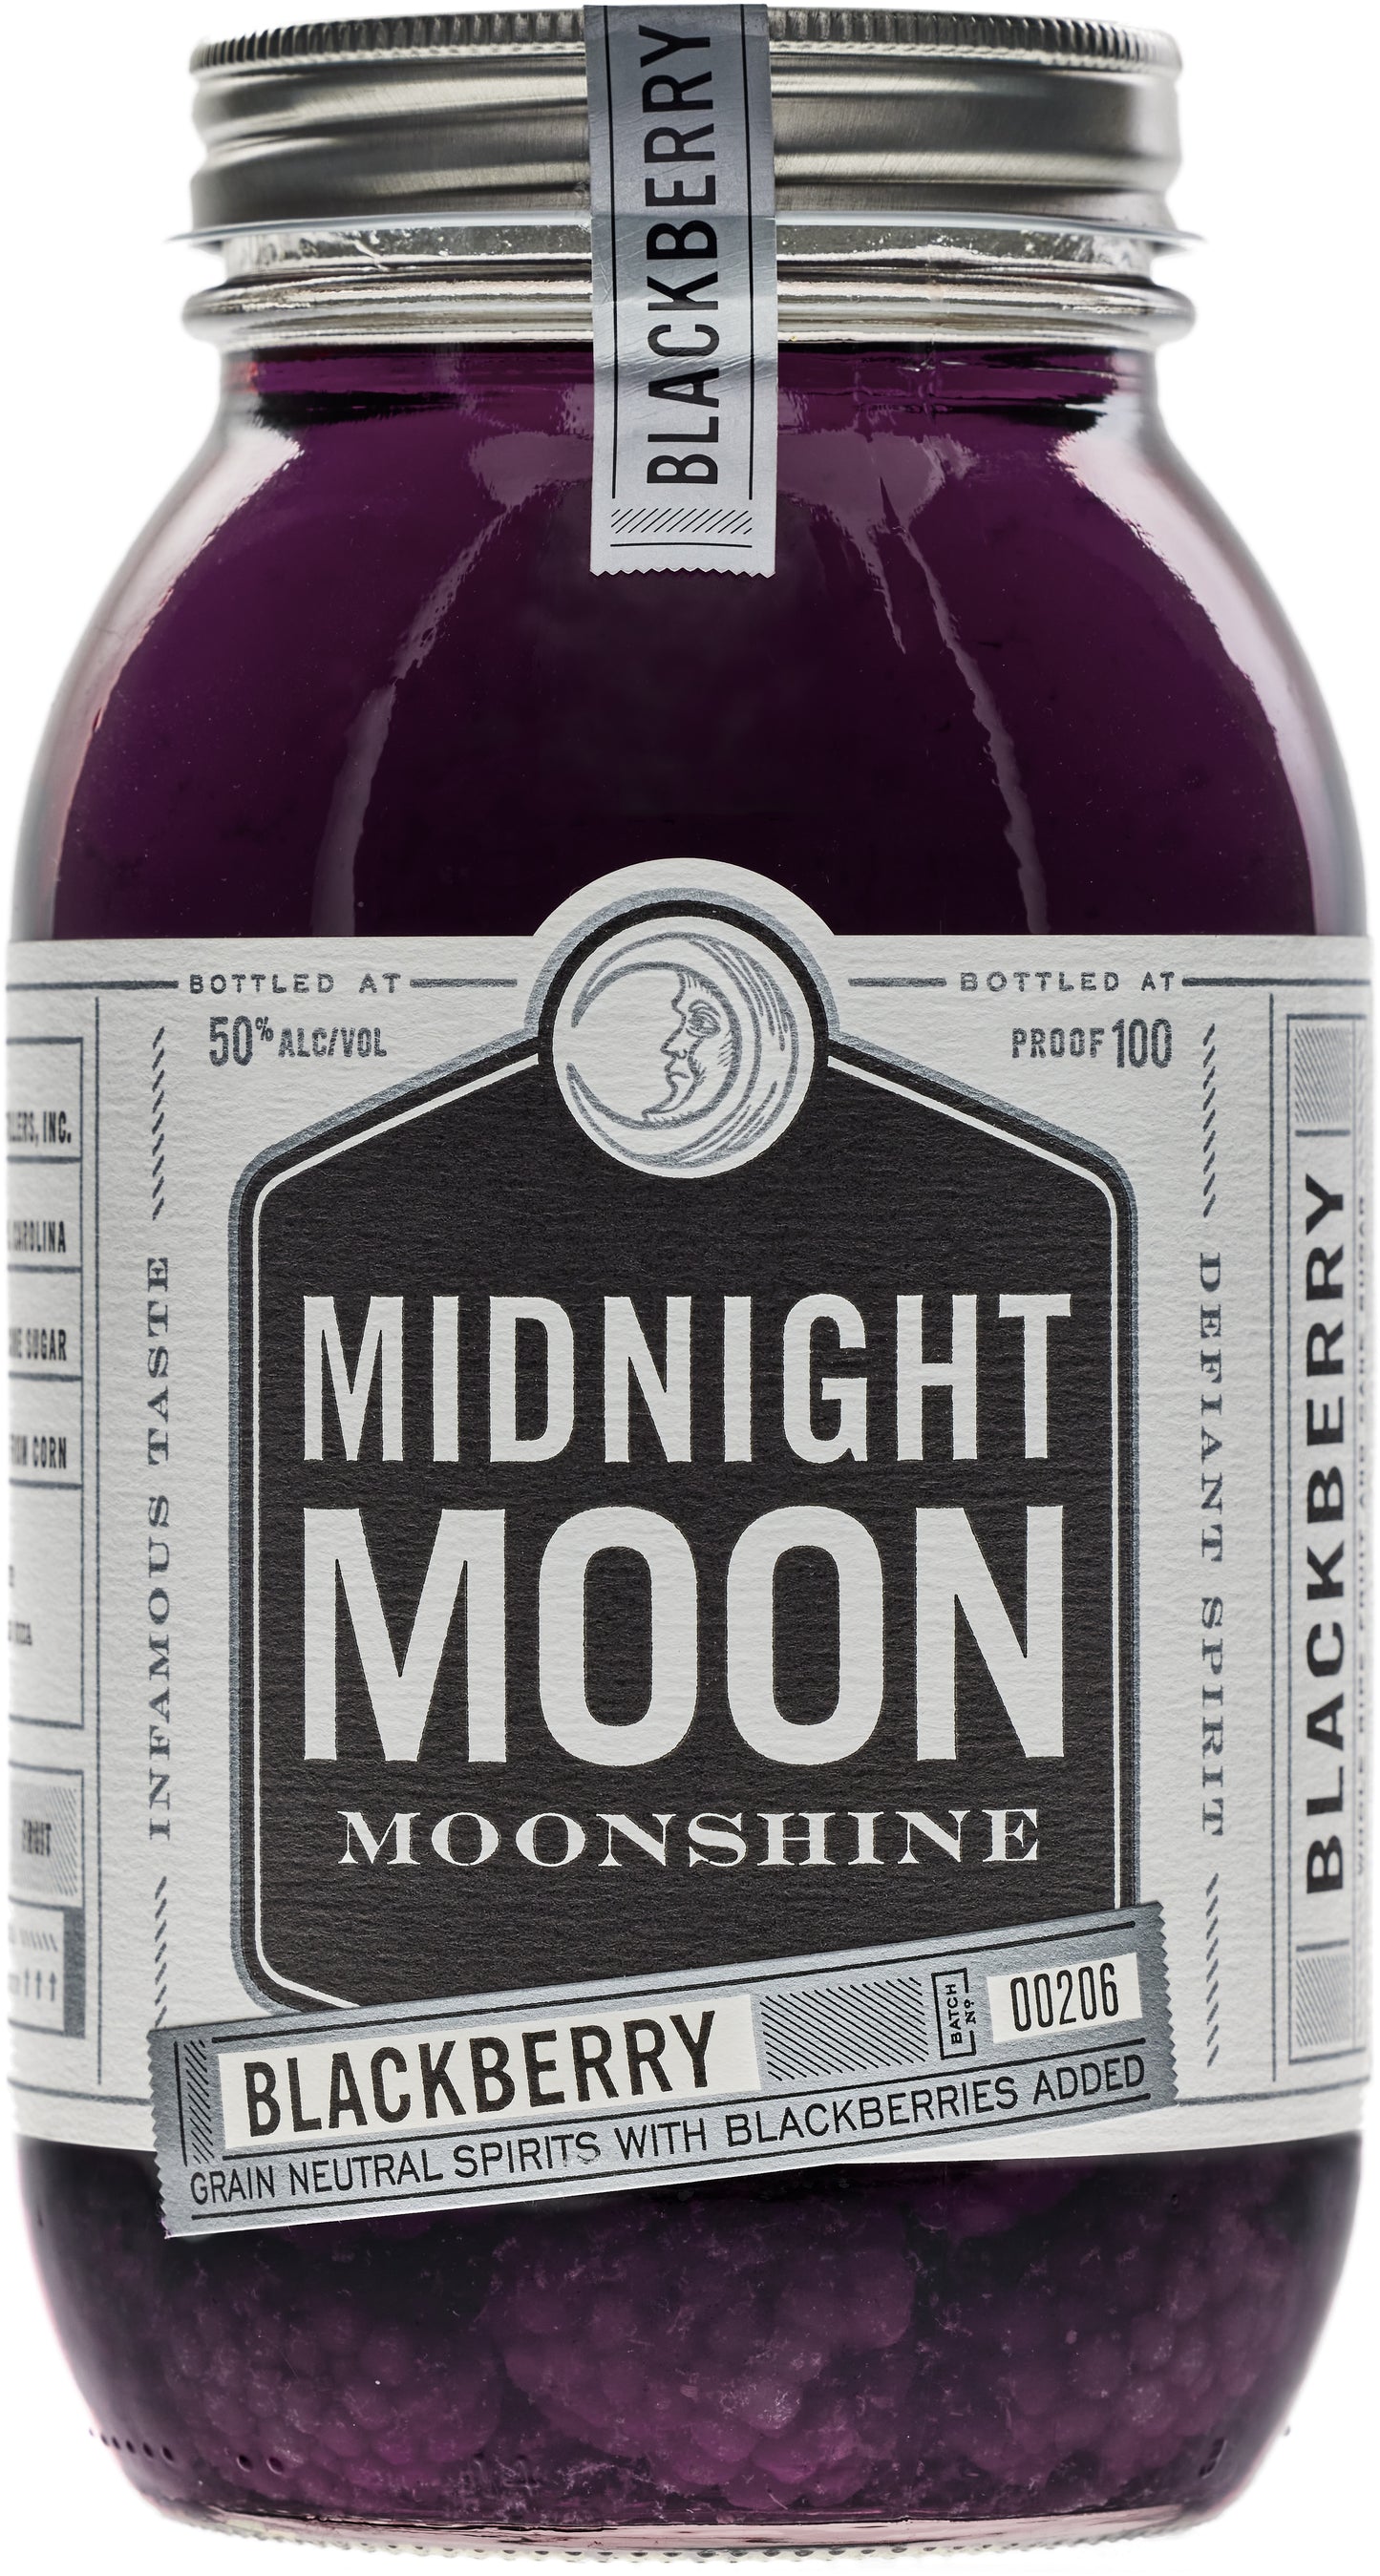 Midnight Moon Blackberry Moonshine